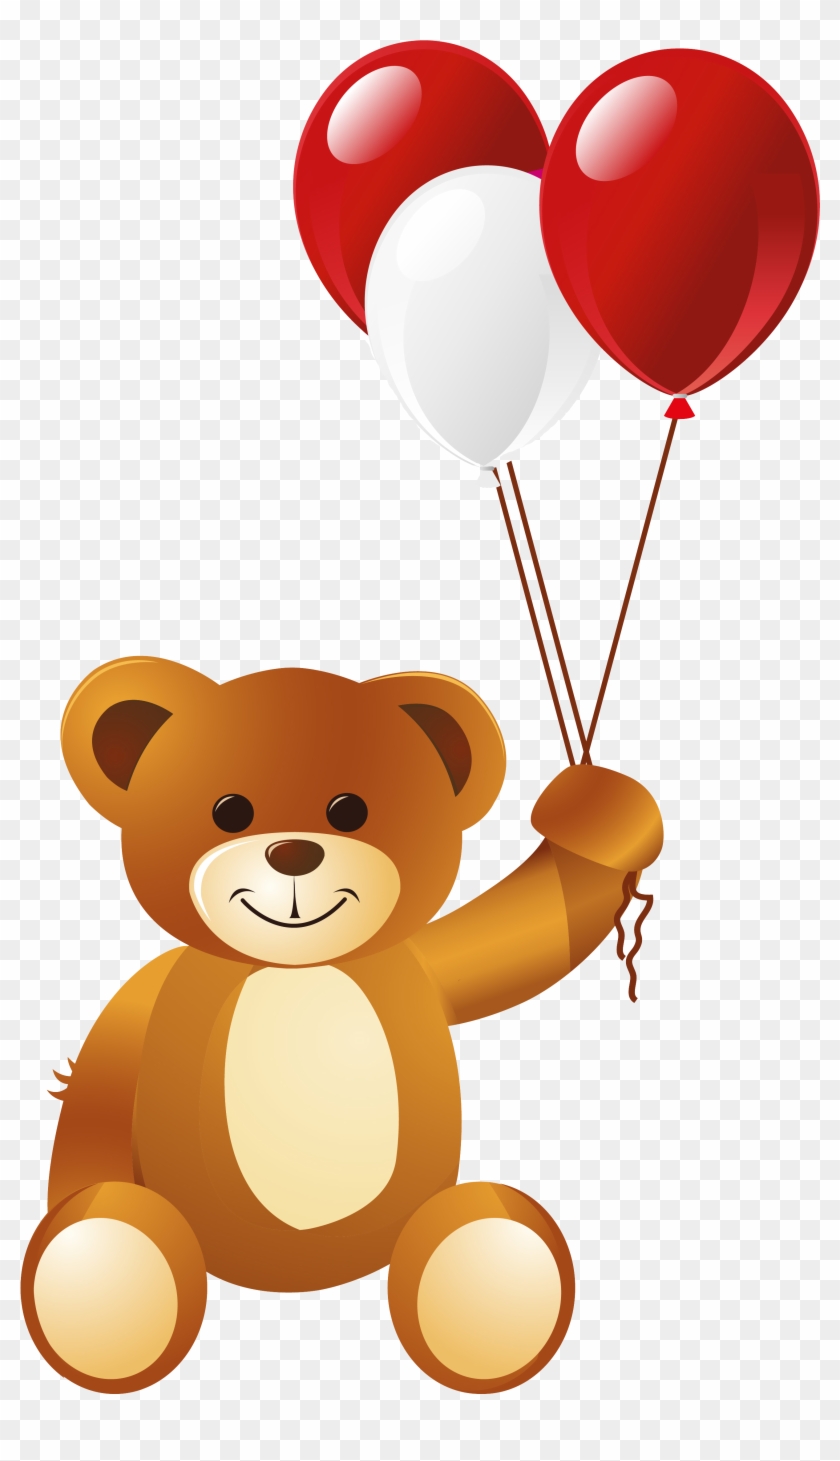 Teddy Bear Balloon Clip Art - Teddy Bear Balloon Clip Art #604375